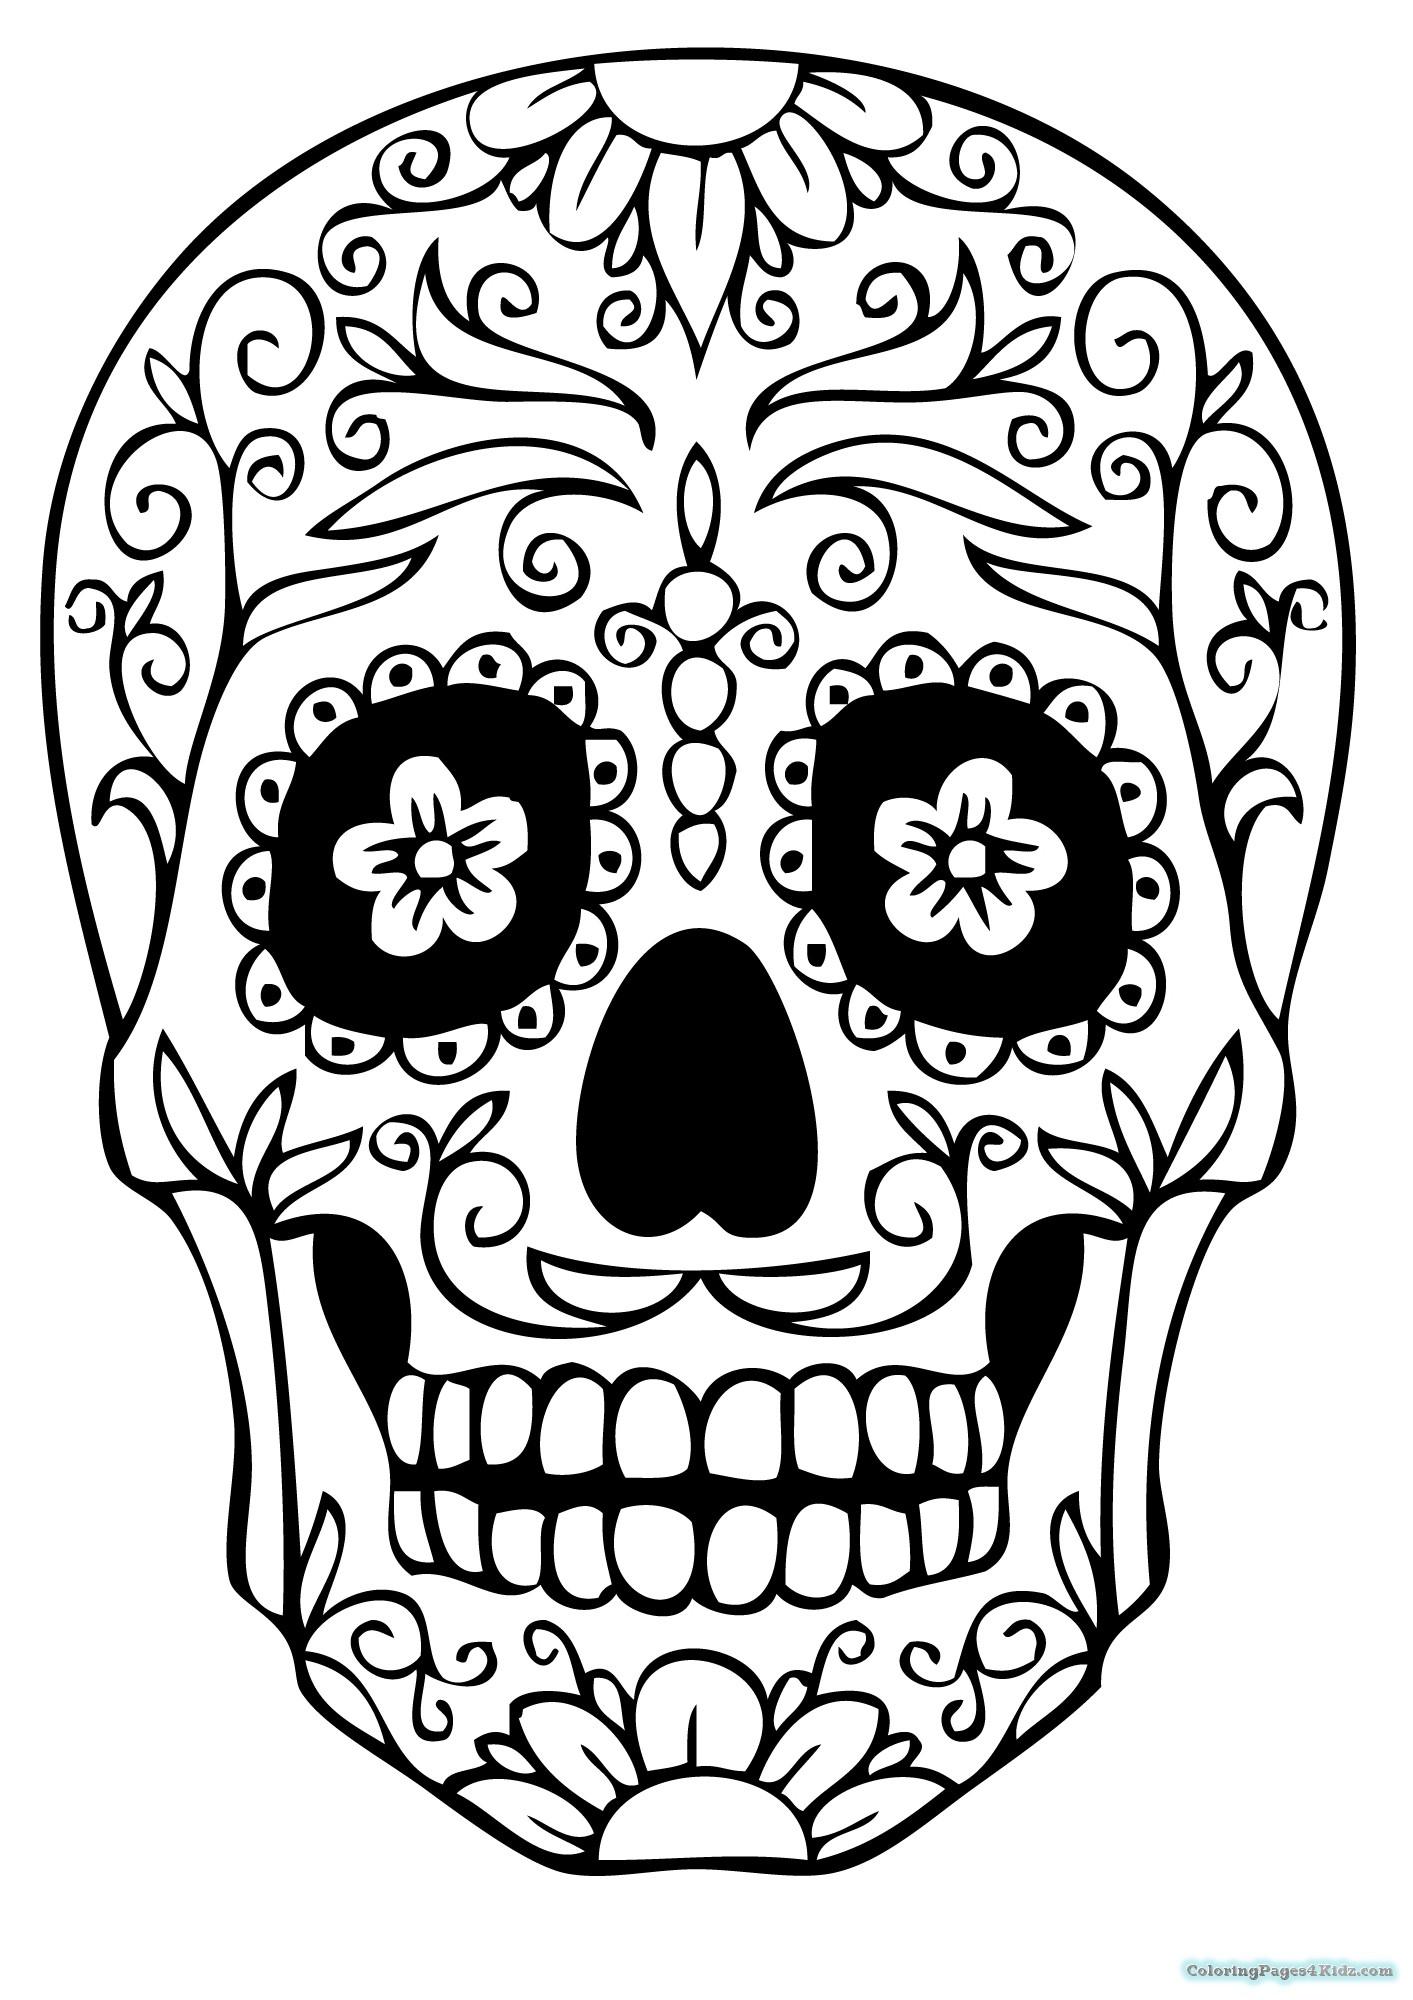 Free Printable Coloring Pages Of Sugar Skulls at